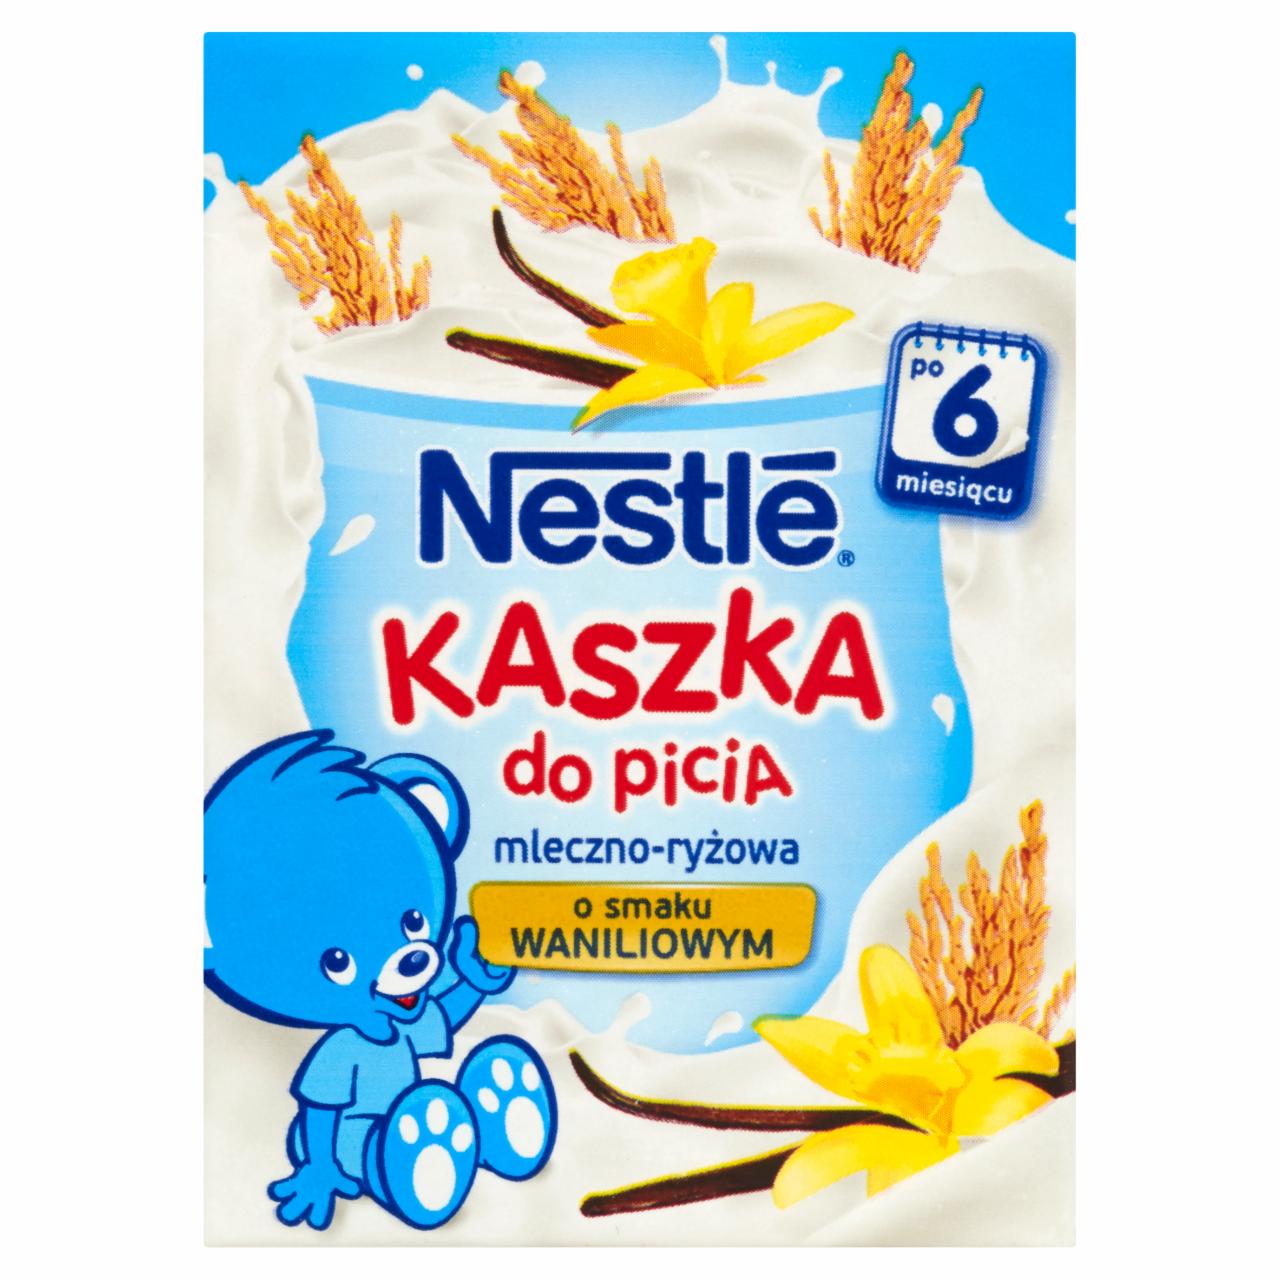 Zdjęcia - Nestlé Kaszka do picia mleczno-ryżowa o smaku waniliowym po 6 miesiącu 200 ml